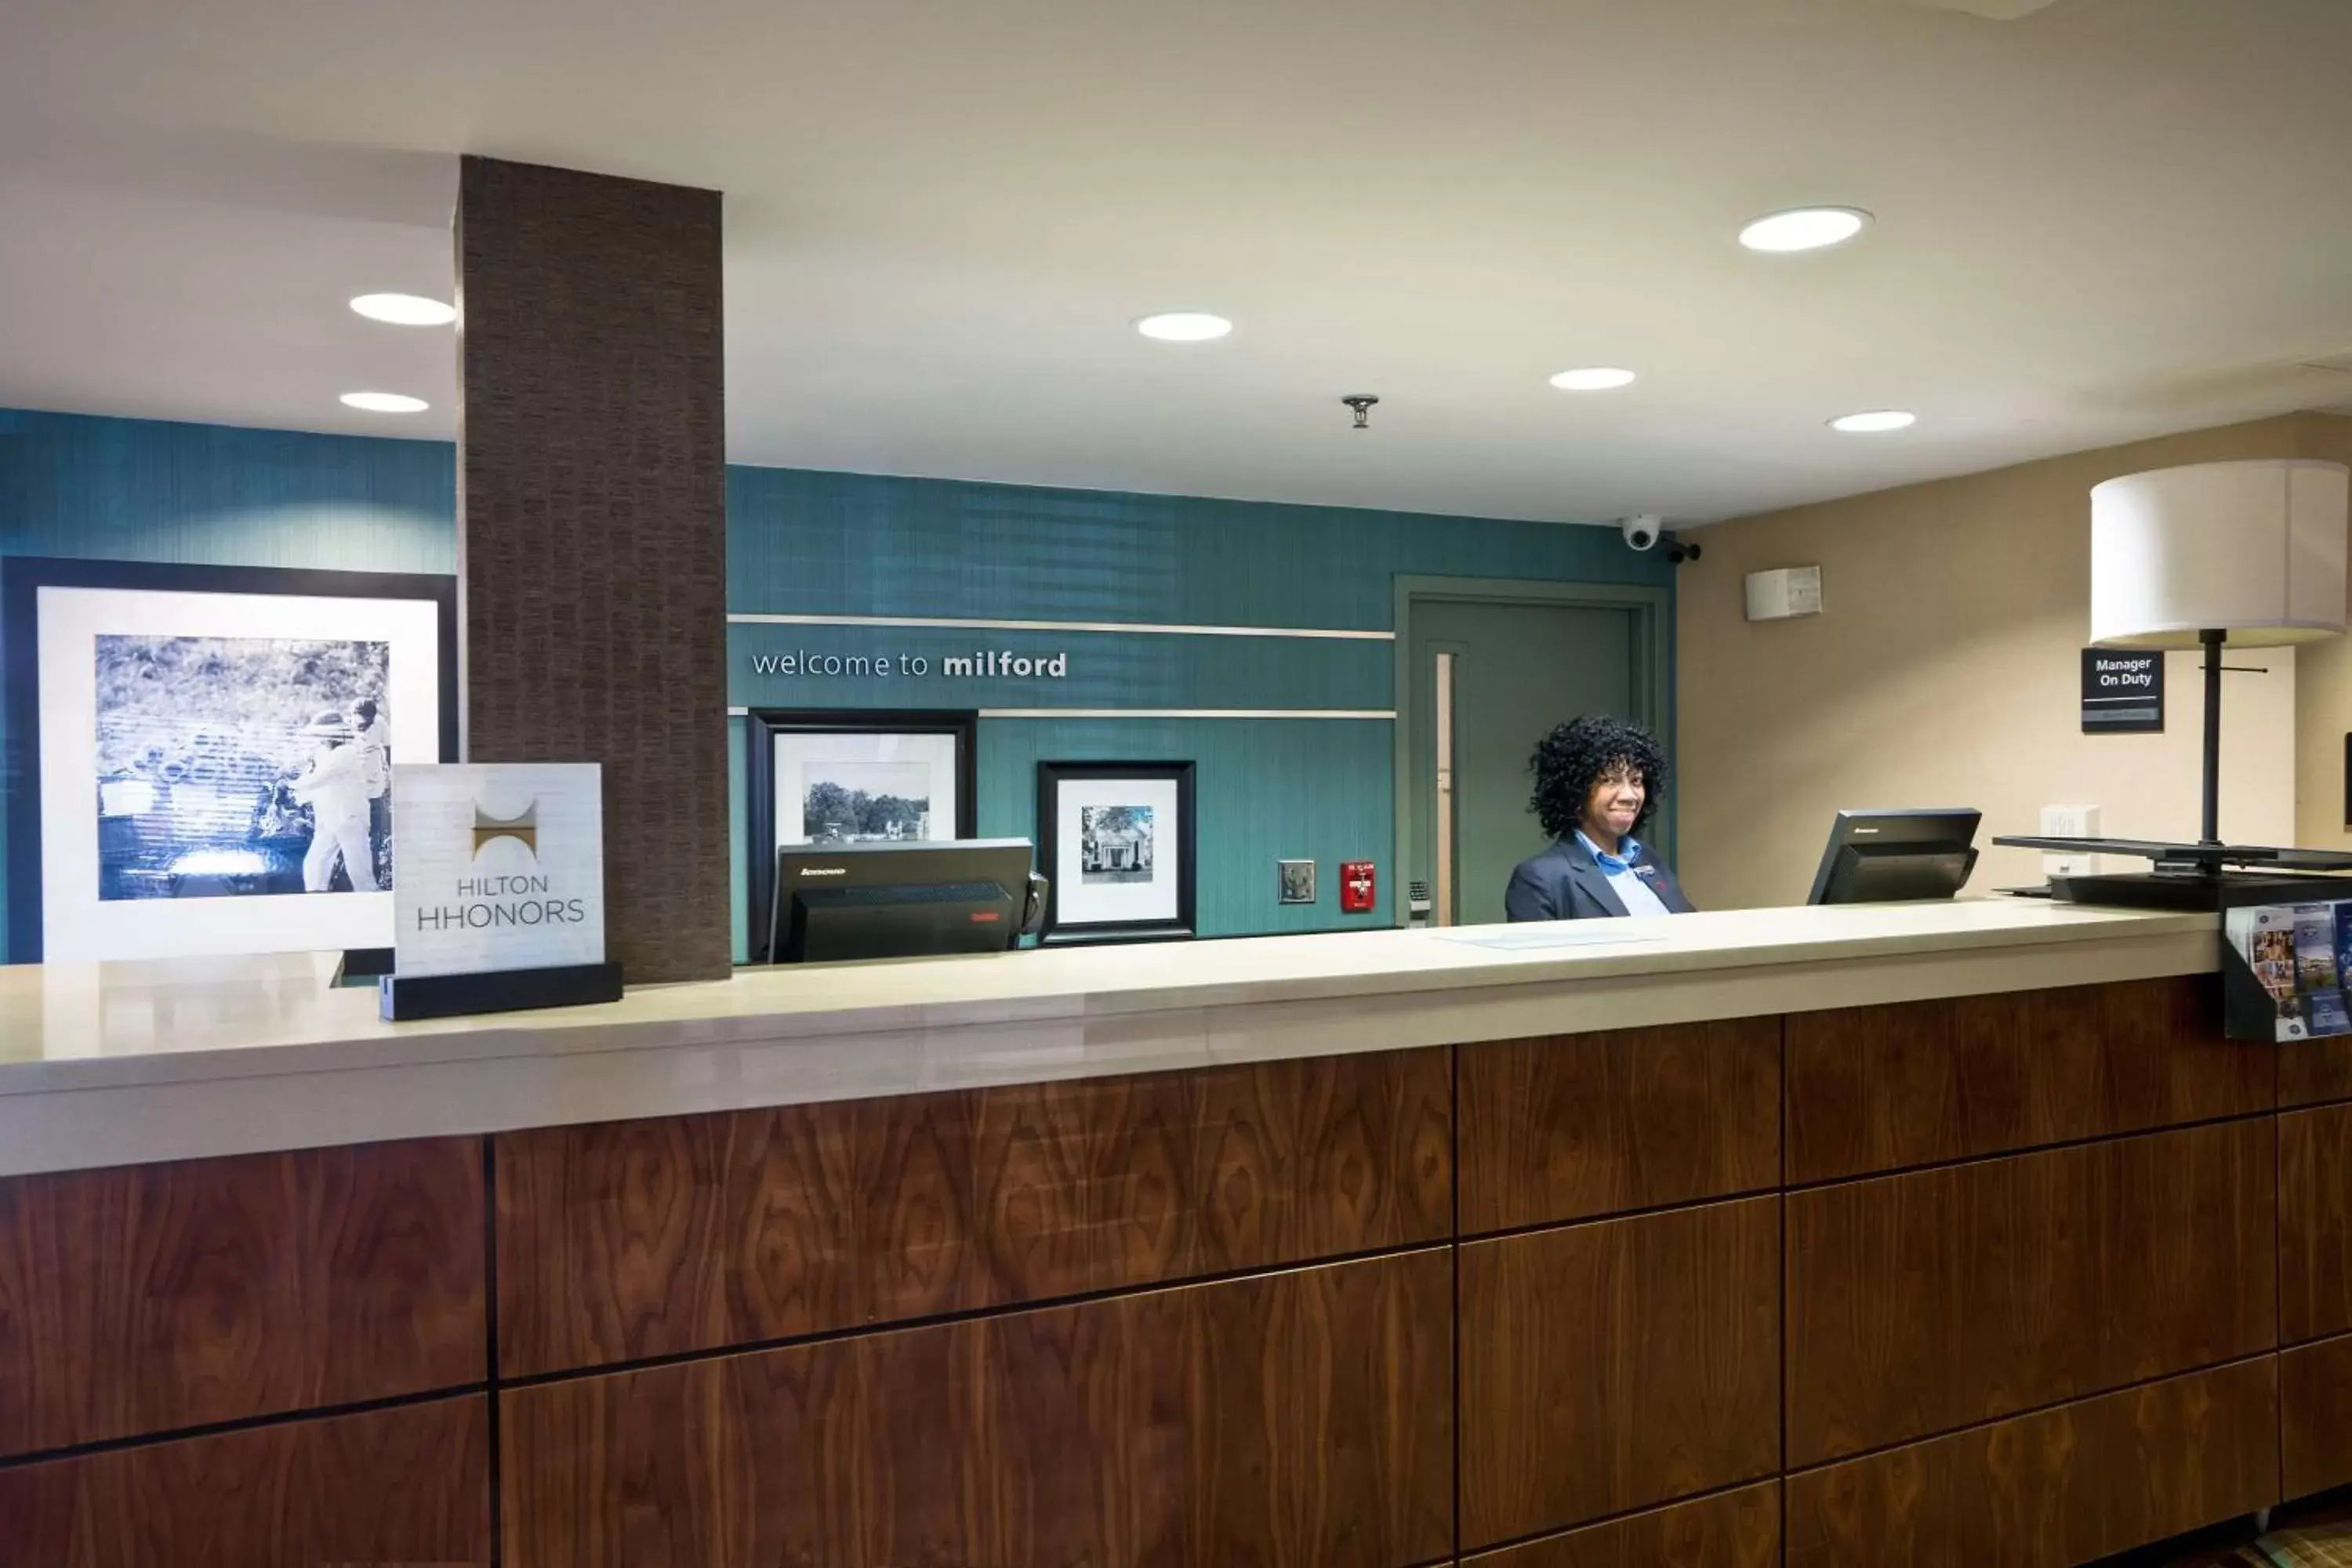 Lobby or reception, Lobby/Reception in Hampton Inn by Hilton Milford